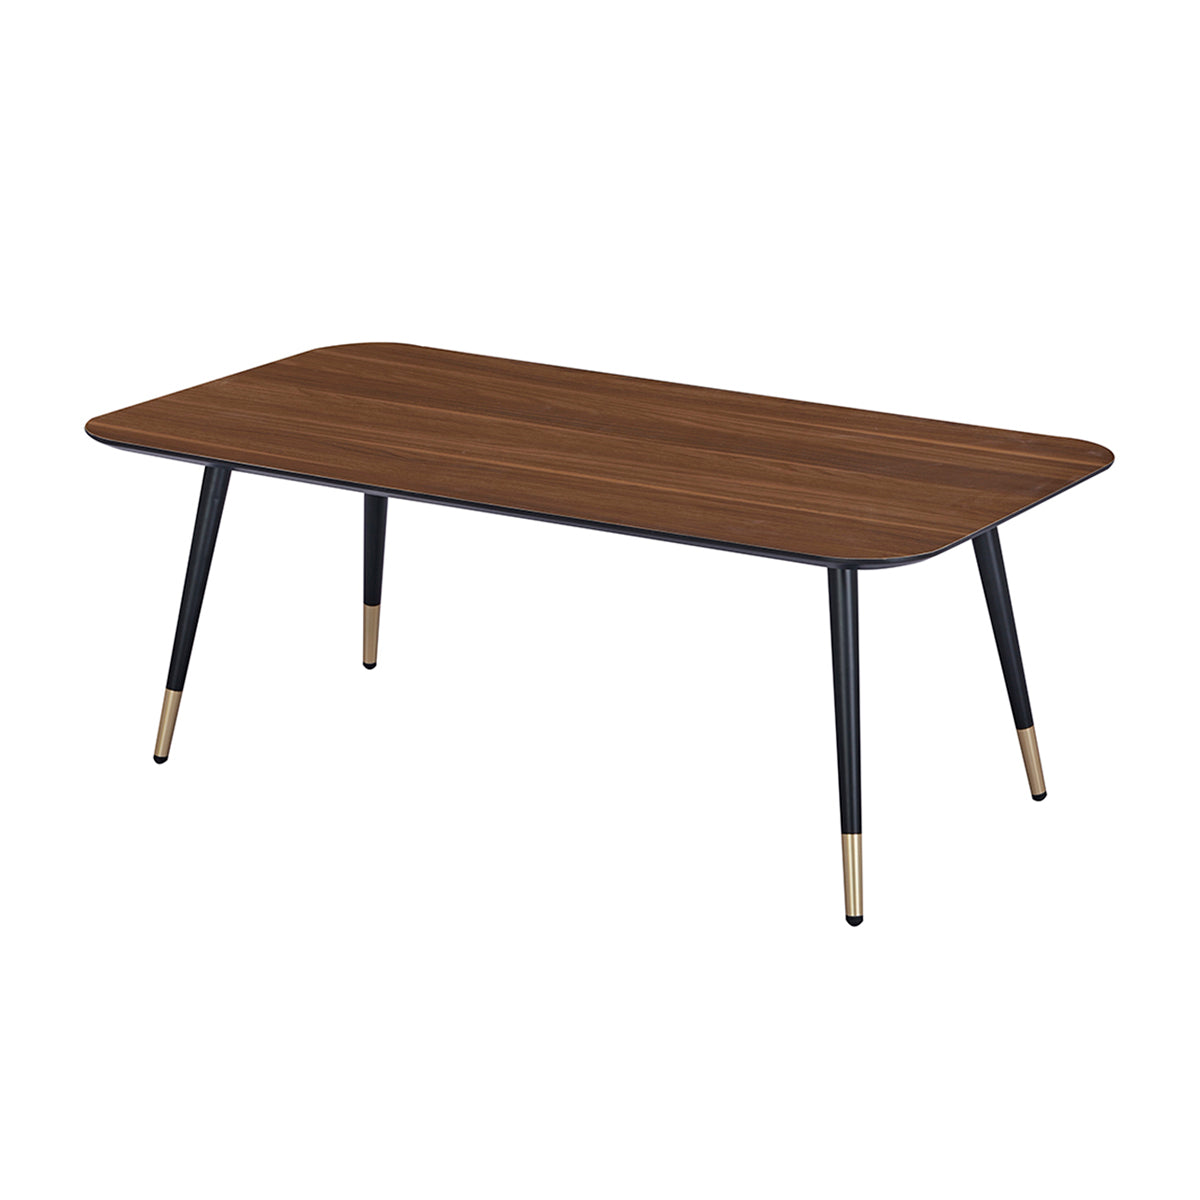 Table basse rectangulaire dimensions 110 x 60 cm en finition mélaminé imitation noyer - MATIS